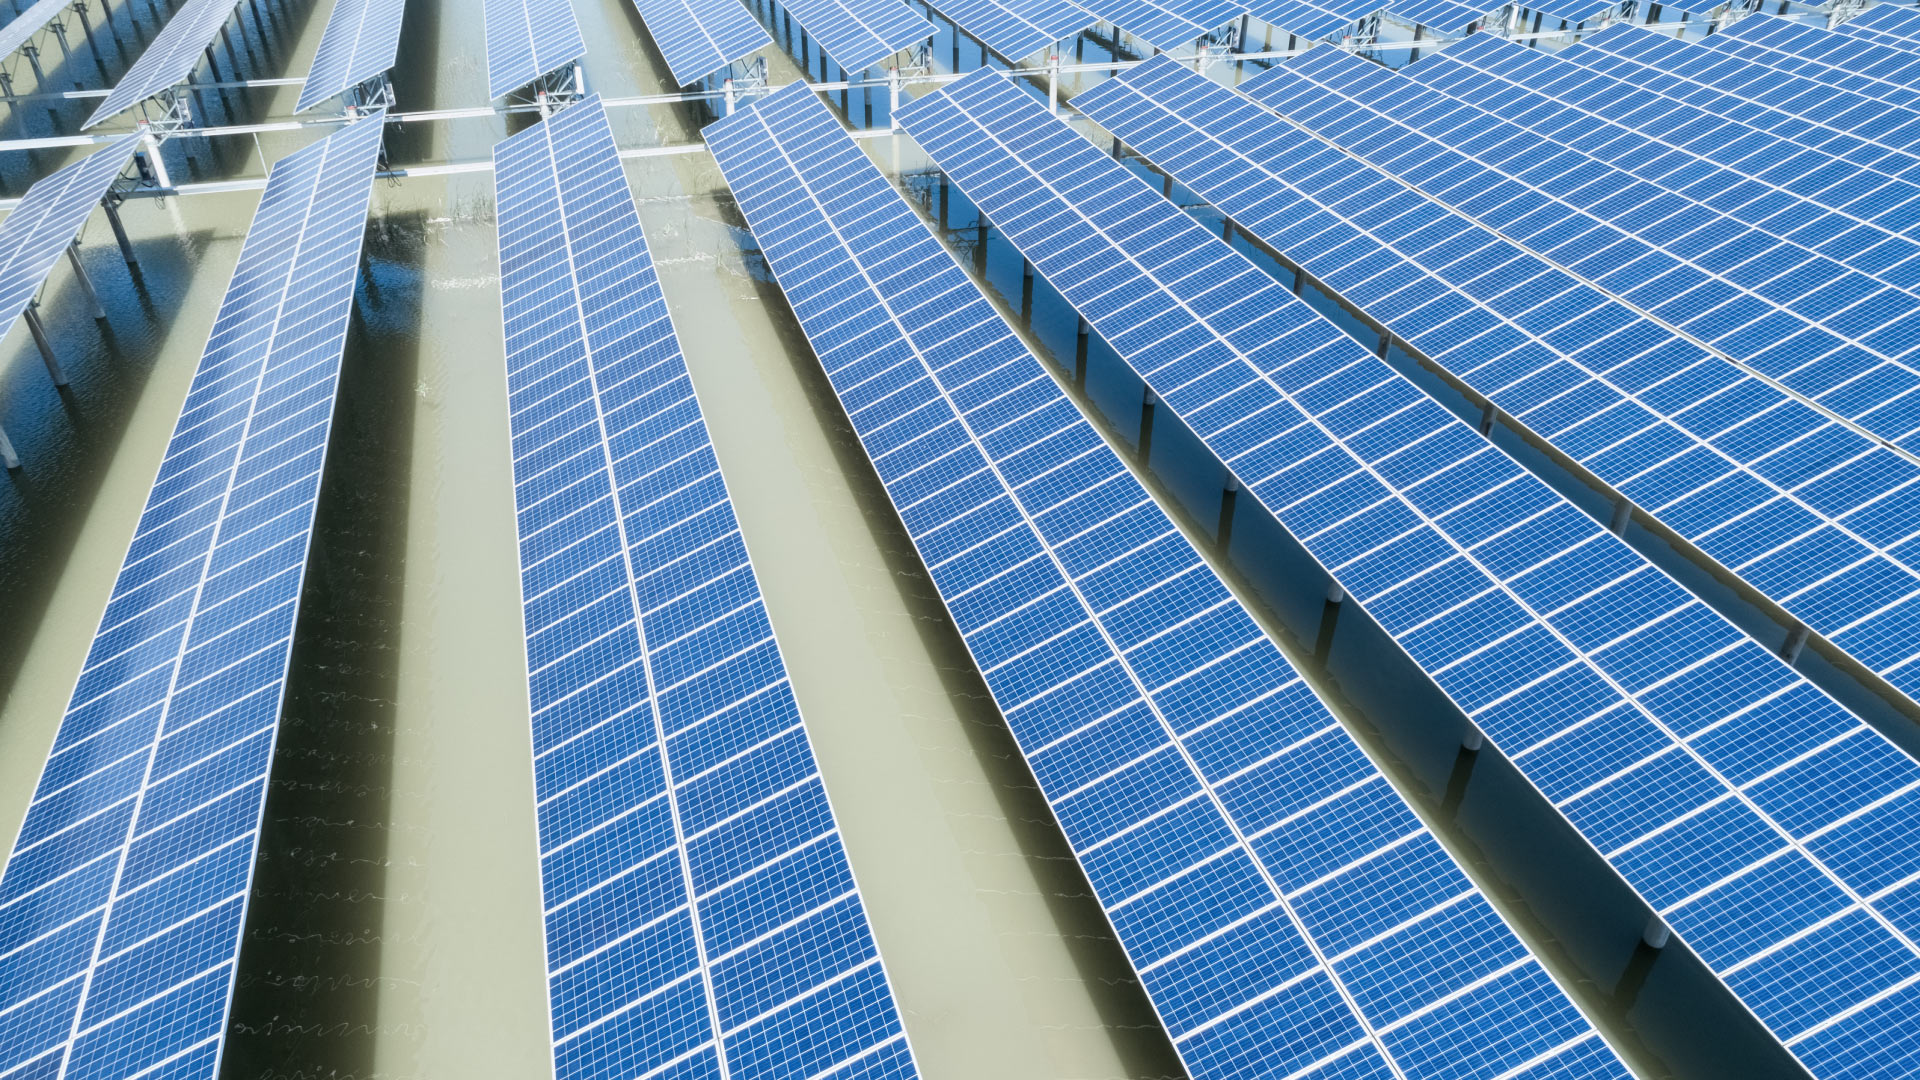 energia_fotovoltaica_apertura-sostenibilidad-paneles-solares-california